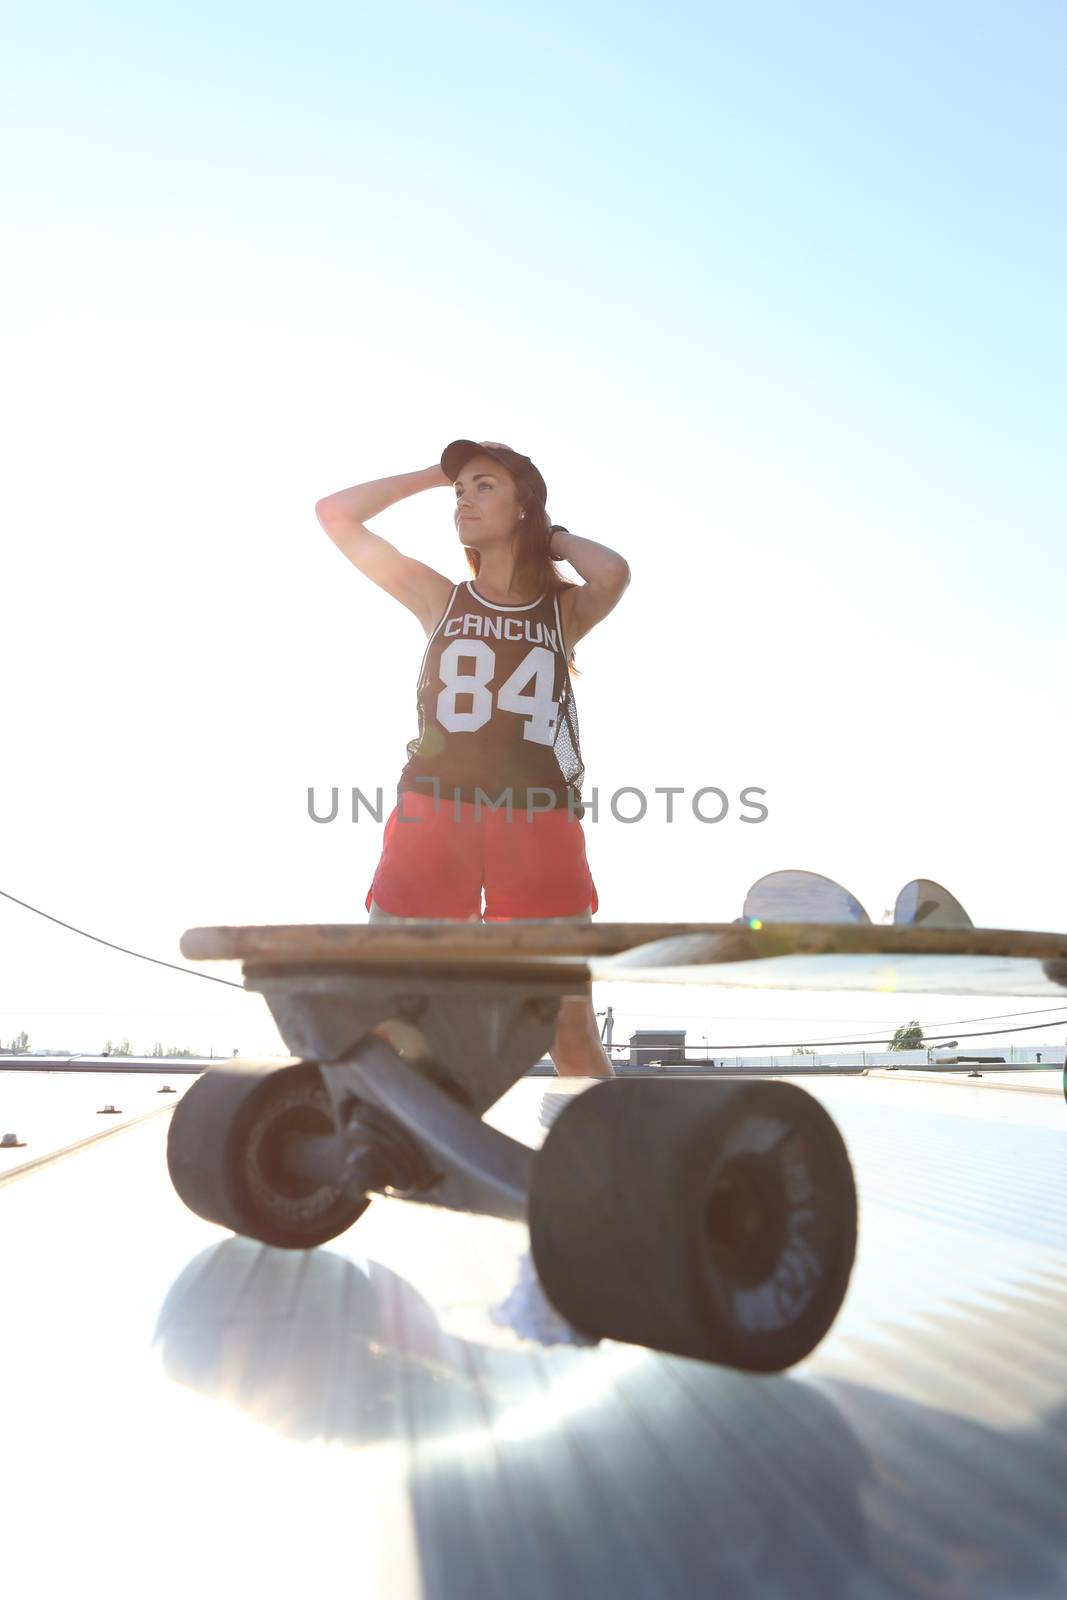 The girl on a skateboard